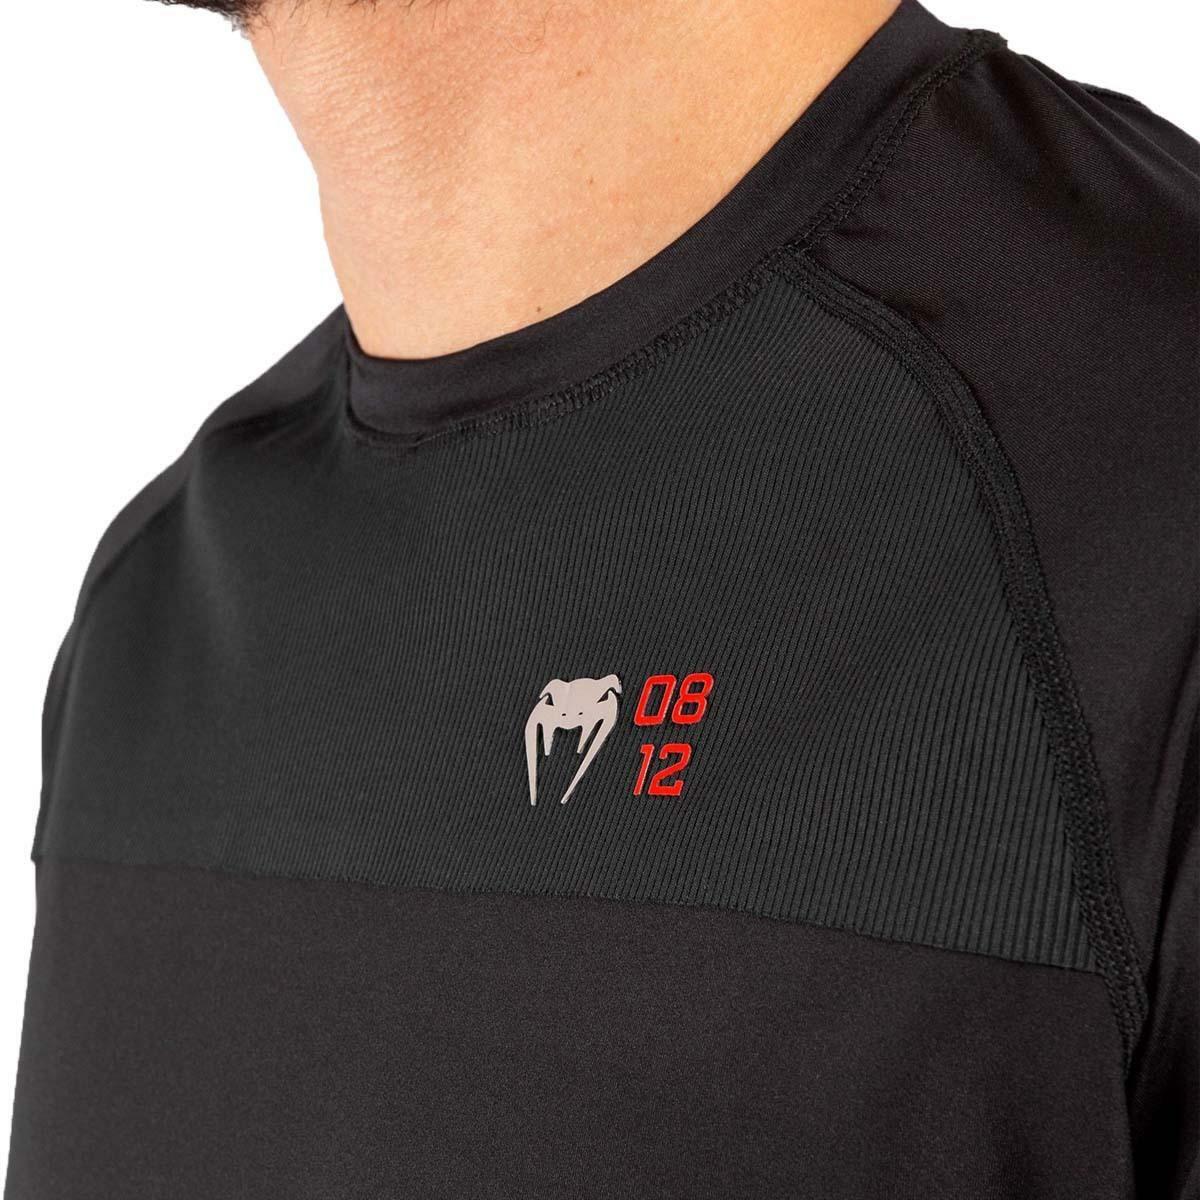 Venum Loma 08-12 Dry Tech T-Shirt Black VEN-04340-001